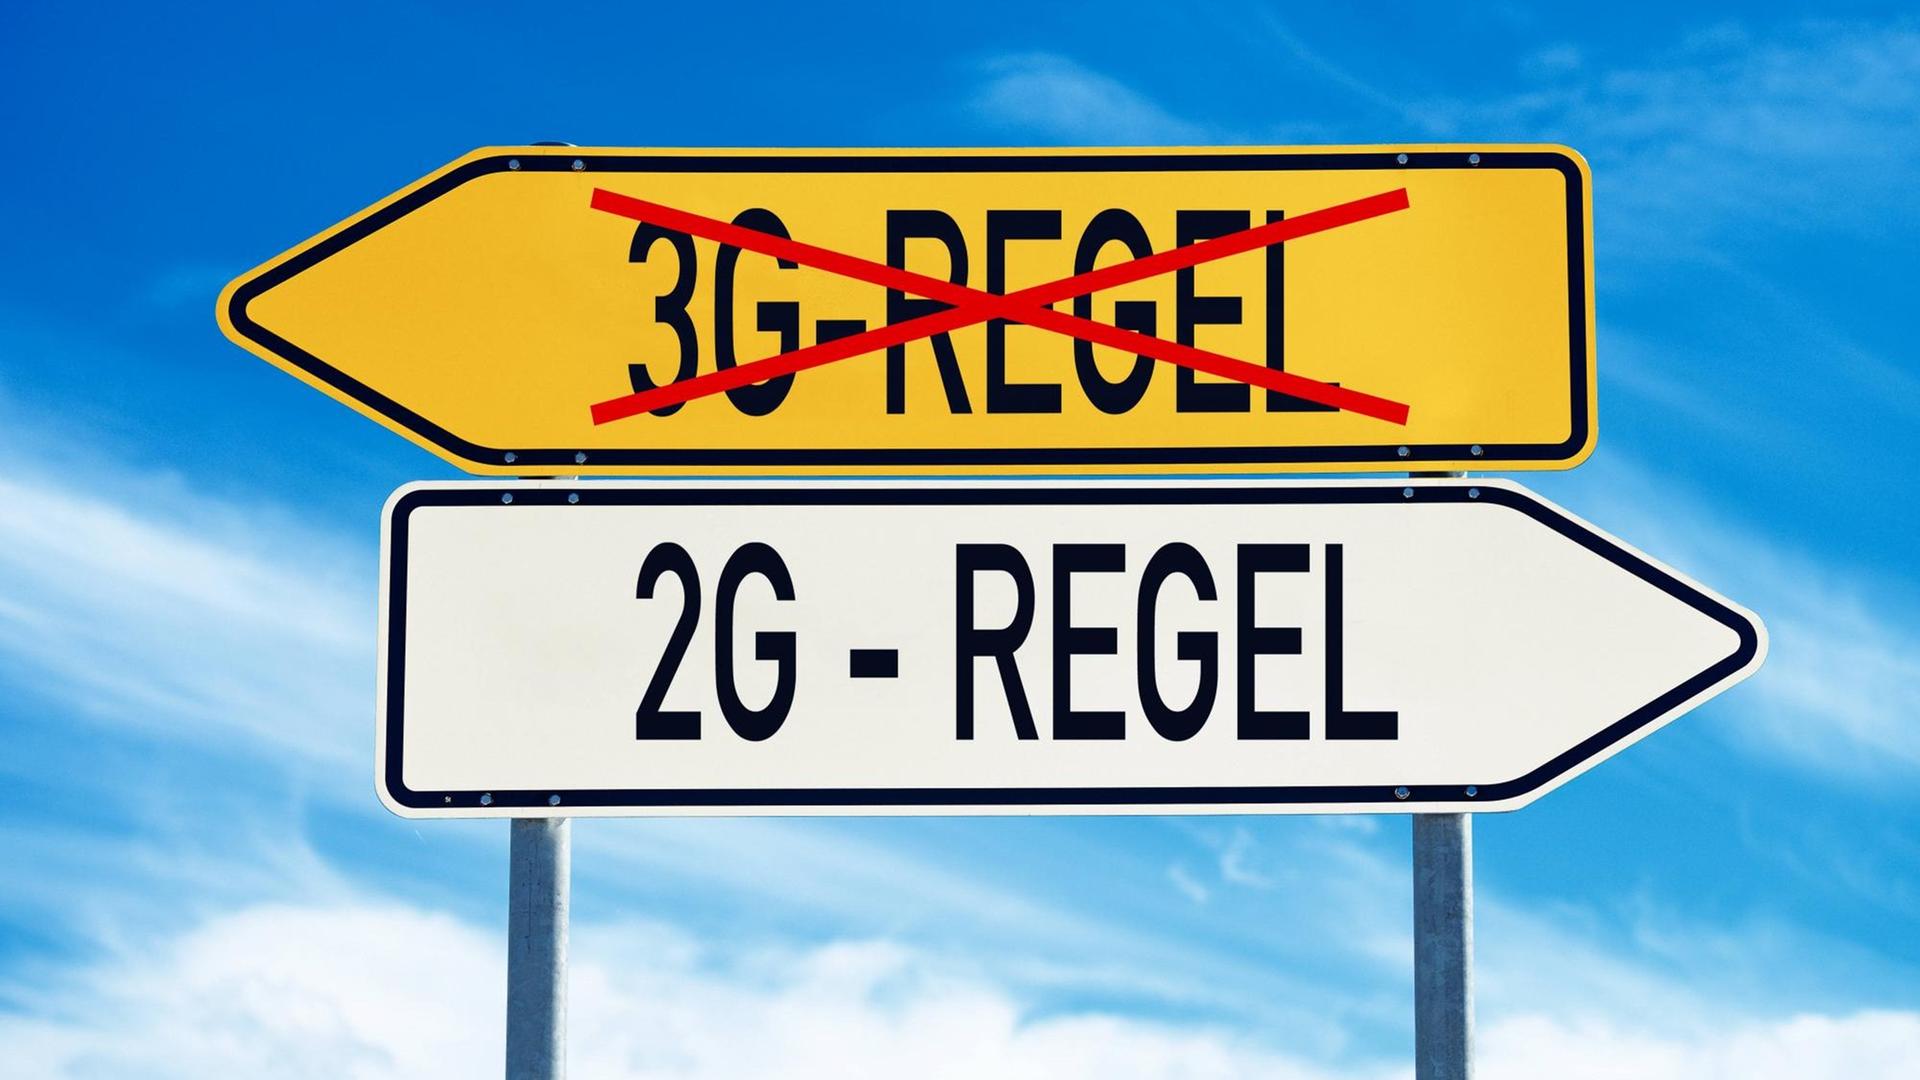 Zwei Schilder weisen in die jeweils andere Richtung. Das eine ist mit "3G-Regel" beschriftet und durchgestrichen, das andere zeigt "2G-Regel".